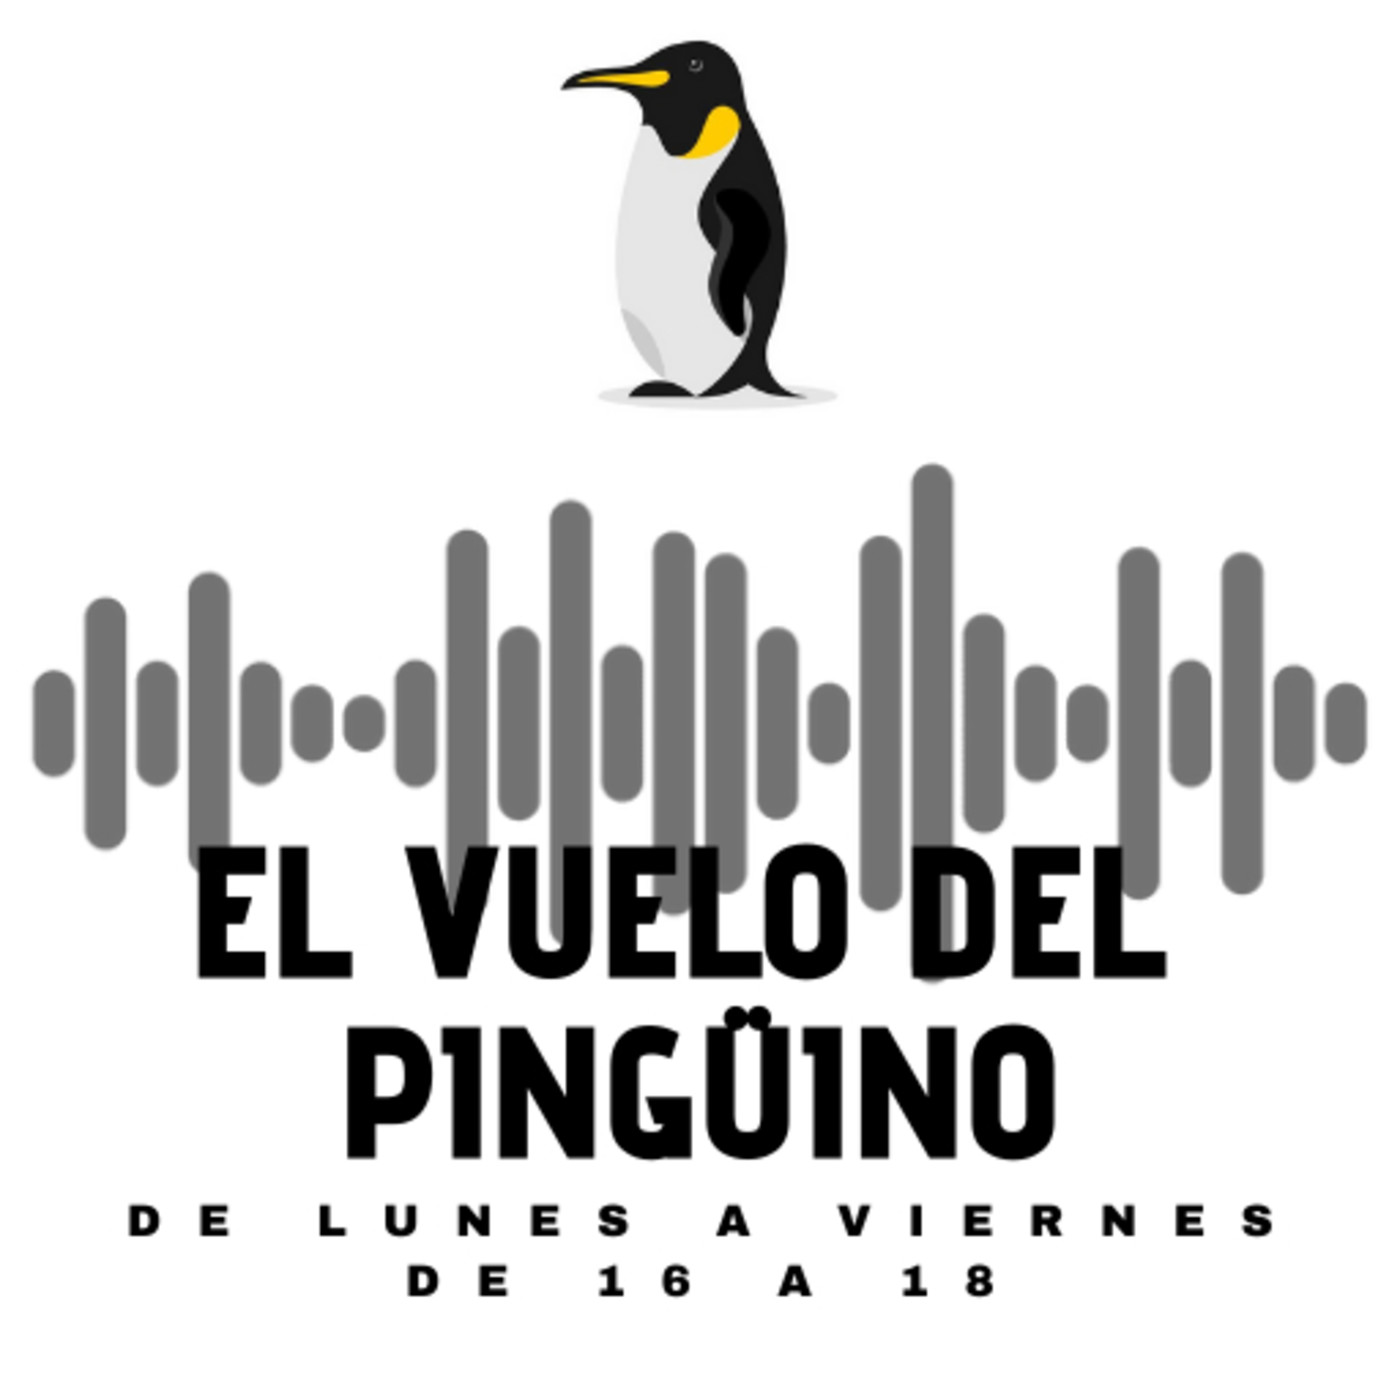 El vuelo del Pingüino - Jueves cultural: Cine, música y pintura - 06-05-2021